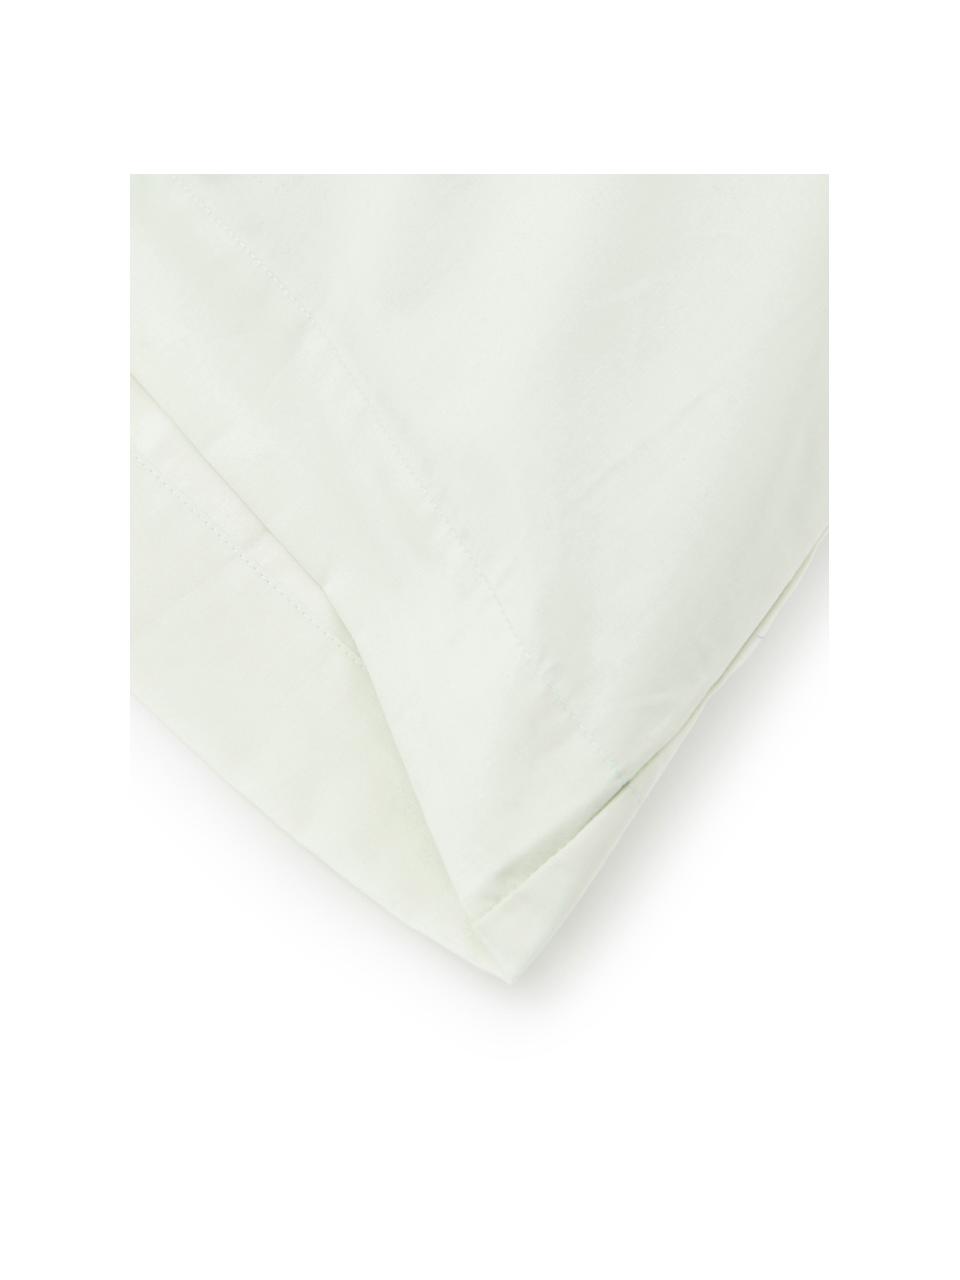 Fundas de almohada Plain Dye, 2 uds., 50 x 85 cm, 100% algodón
El algodón da una sensación agradable y suave en la piel, absorbe bien la humedad y es adecuado para personas alérgicas, Verde claro, An 50 x L 85 cm